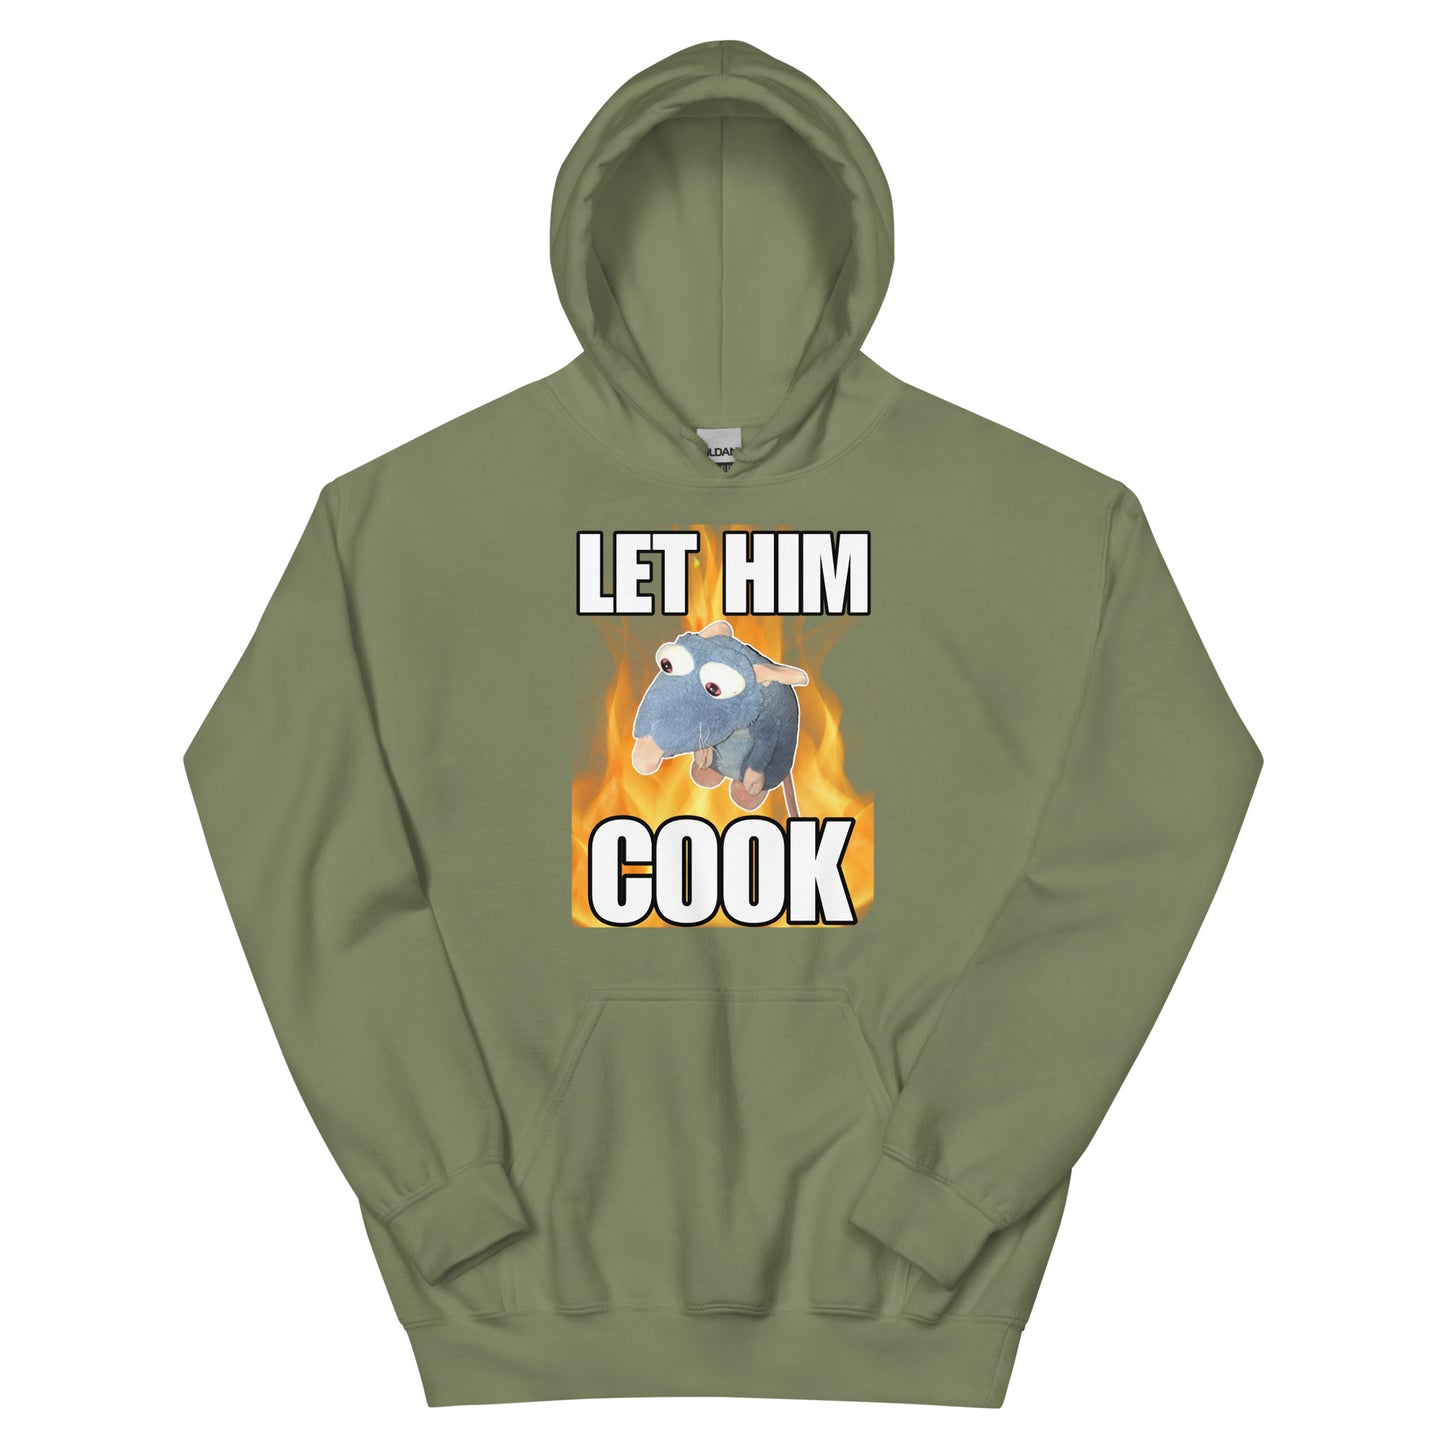 Let him Cook Hoodie